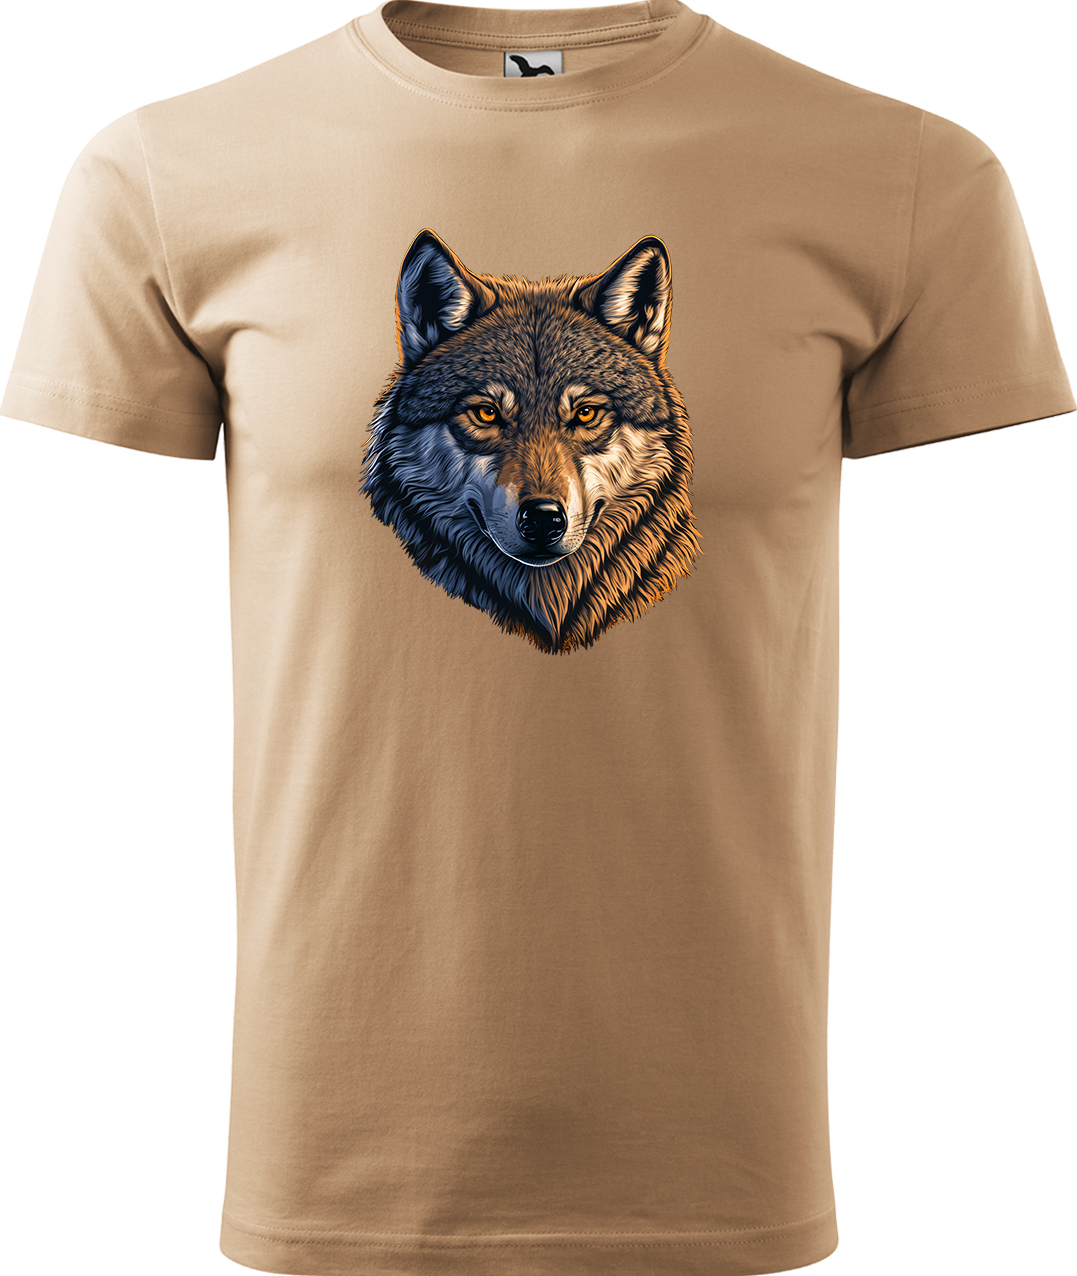 Pánské tričko s vlkem - Hlava vlka Velikost: 3XL, Barva: Písková (08), Střih: pánský